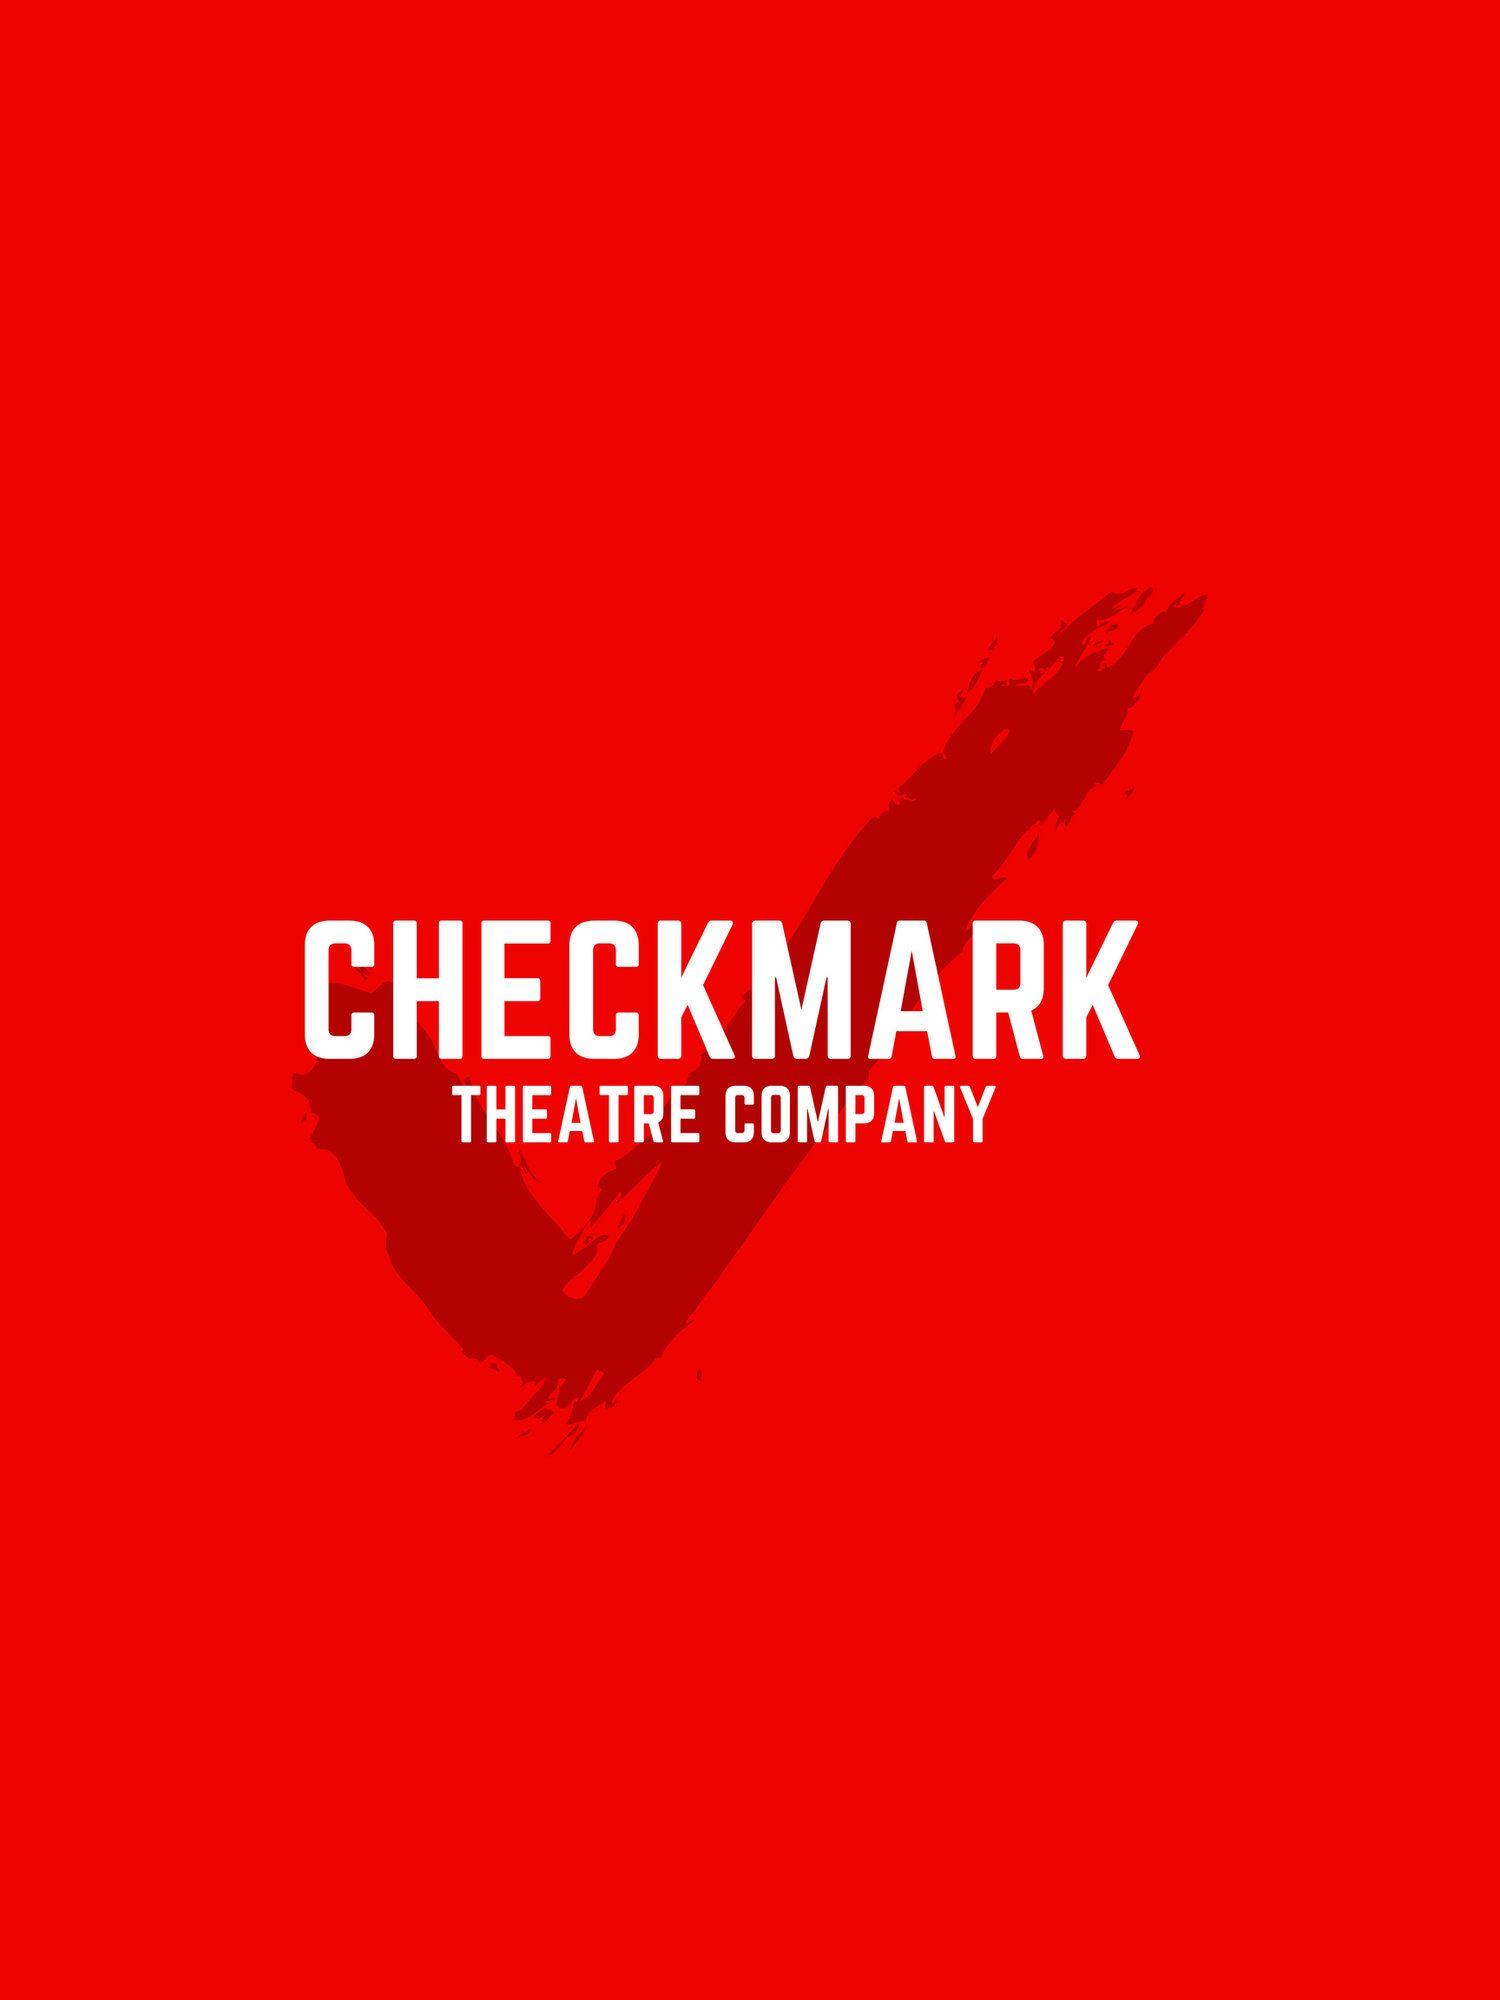 Red Check Mark Company Logo - Checkmark Theatre Company